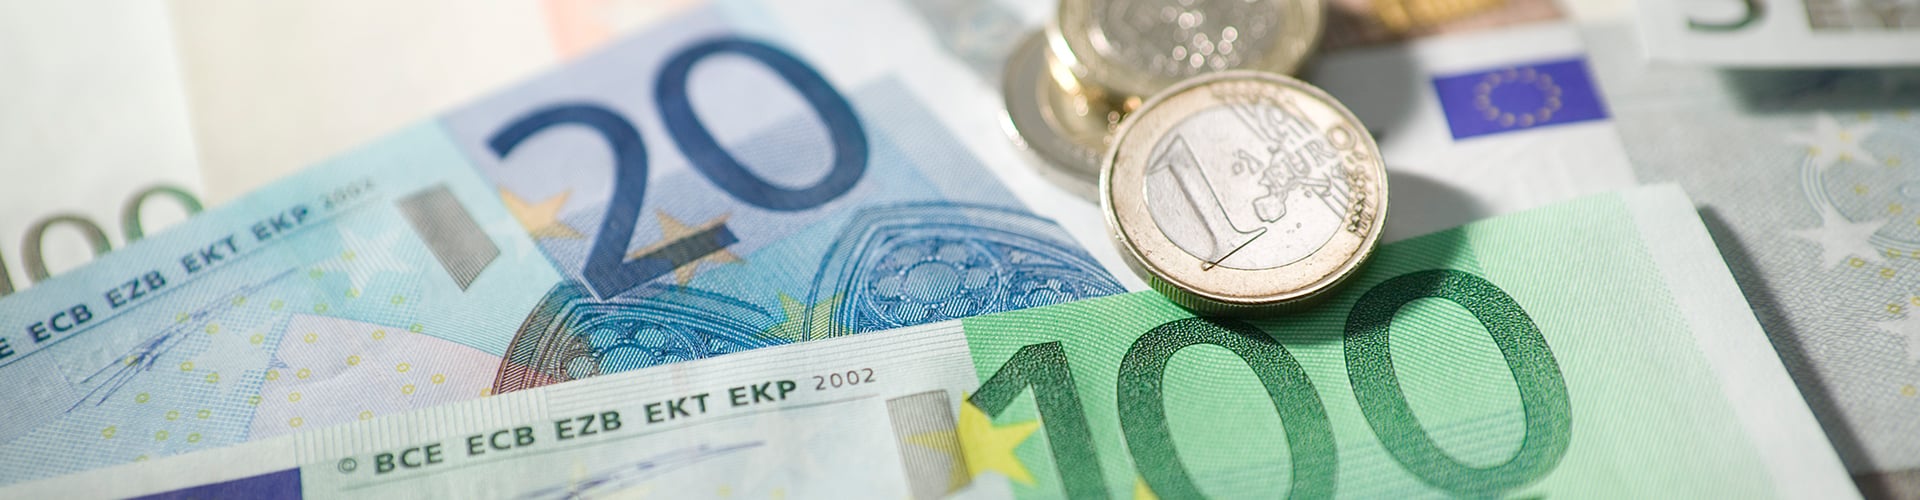 Pile of money - Euros